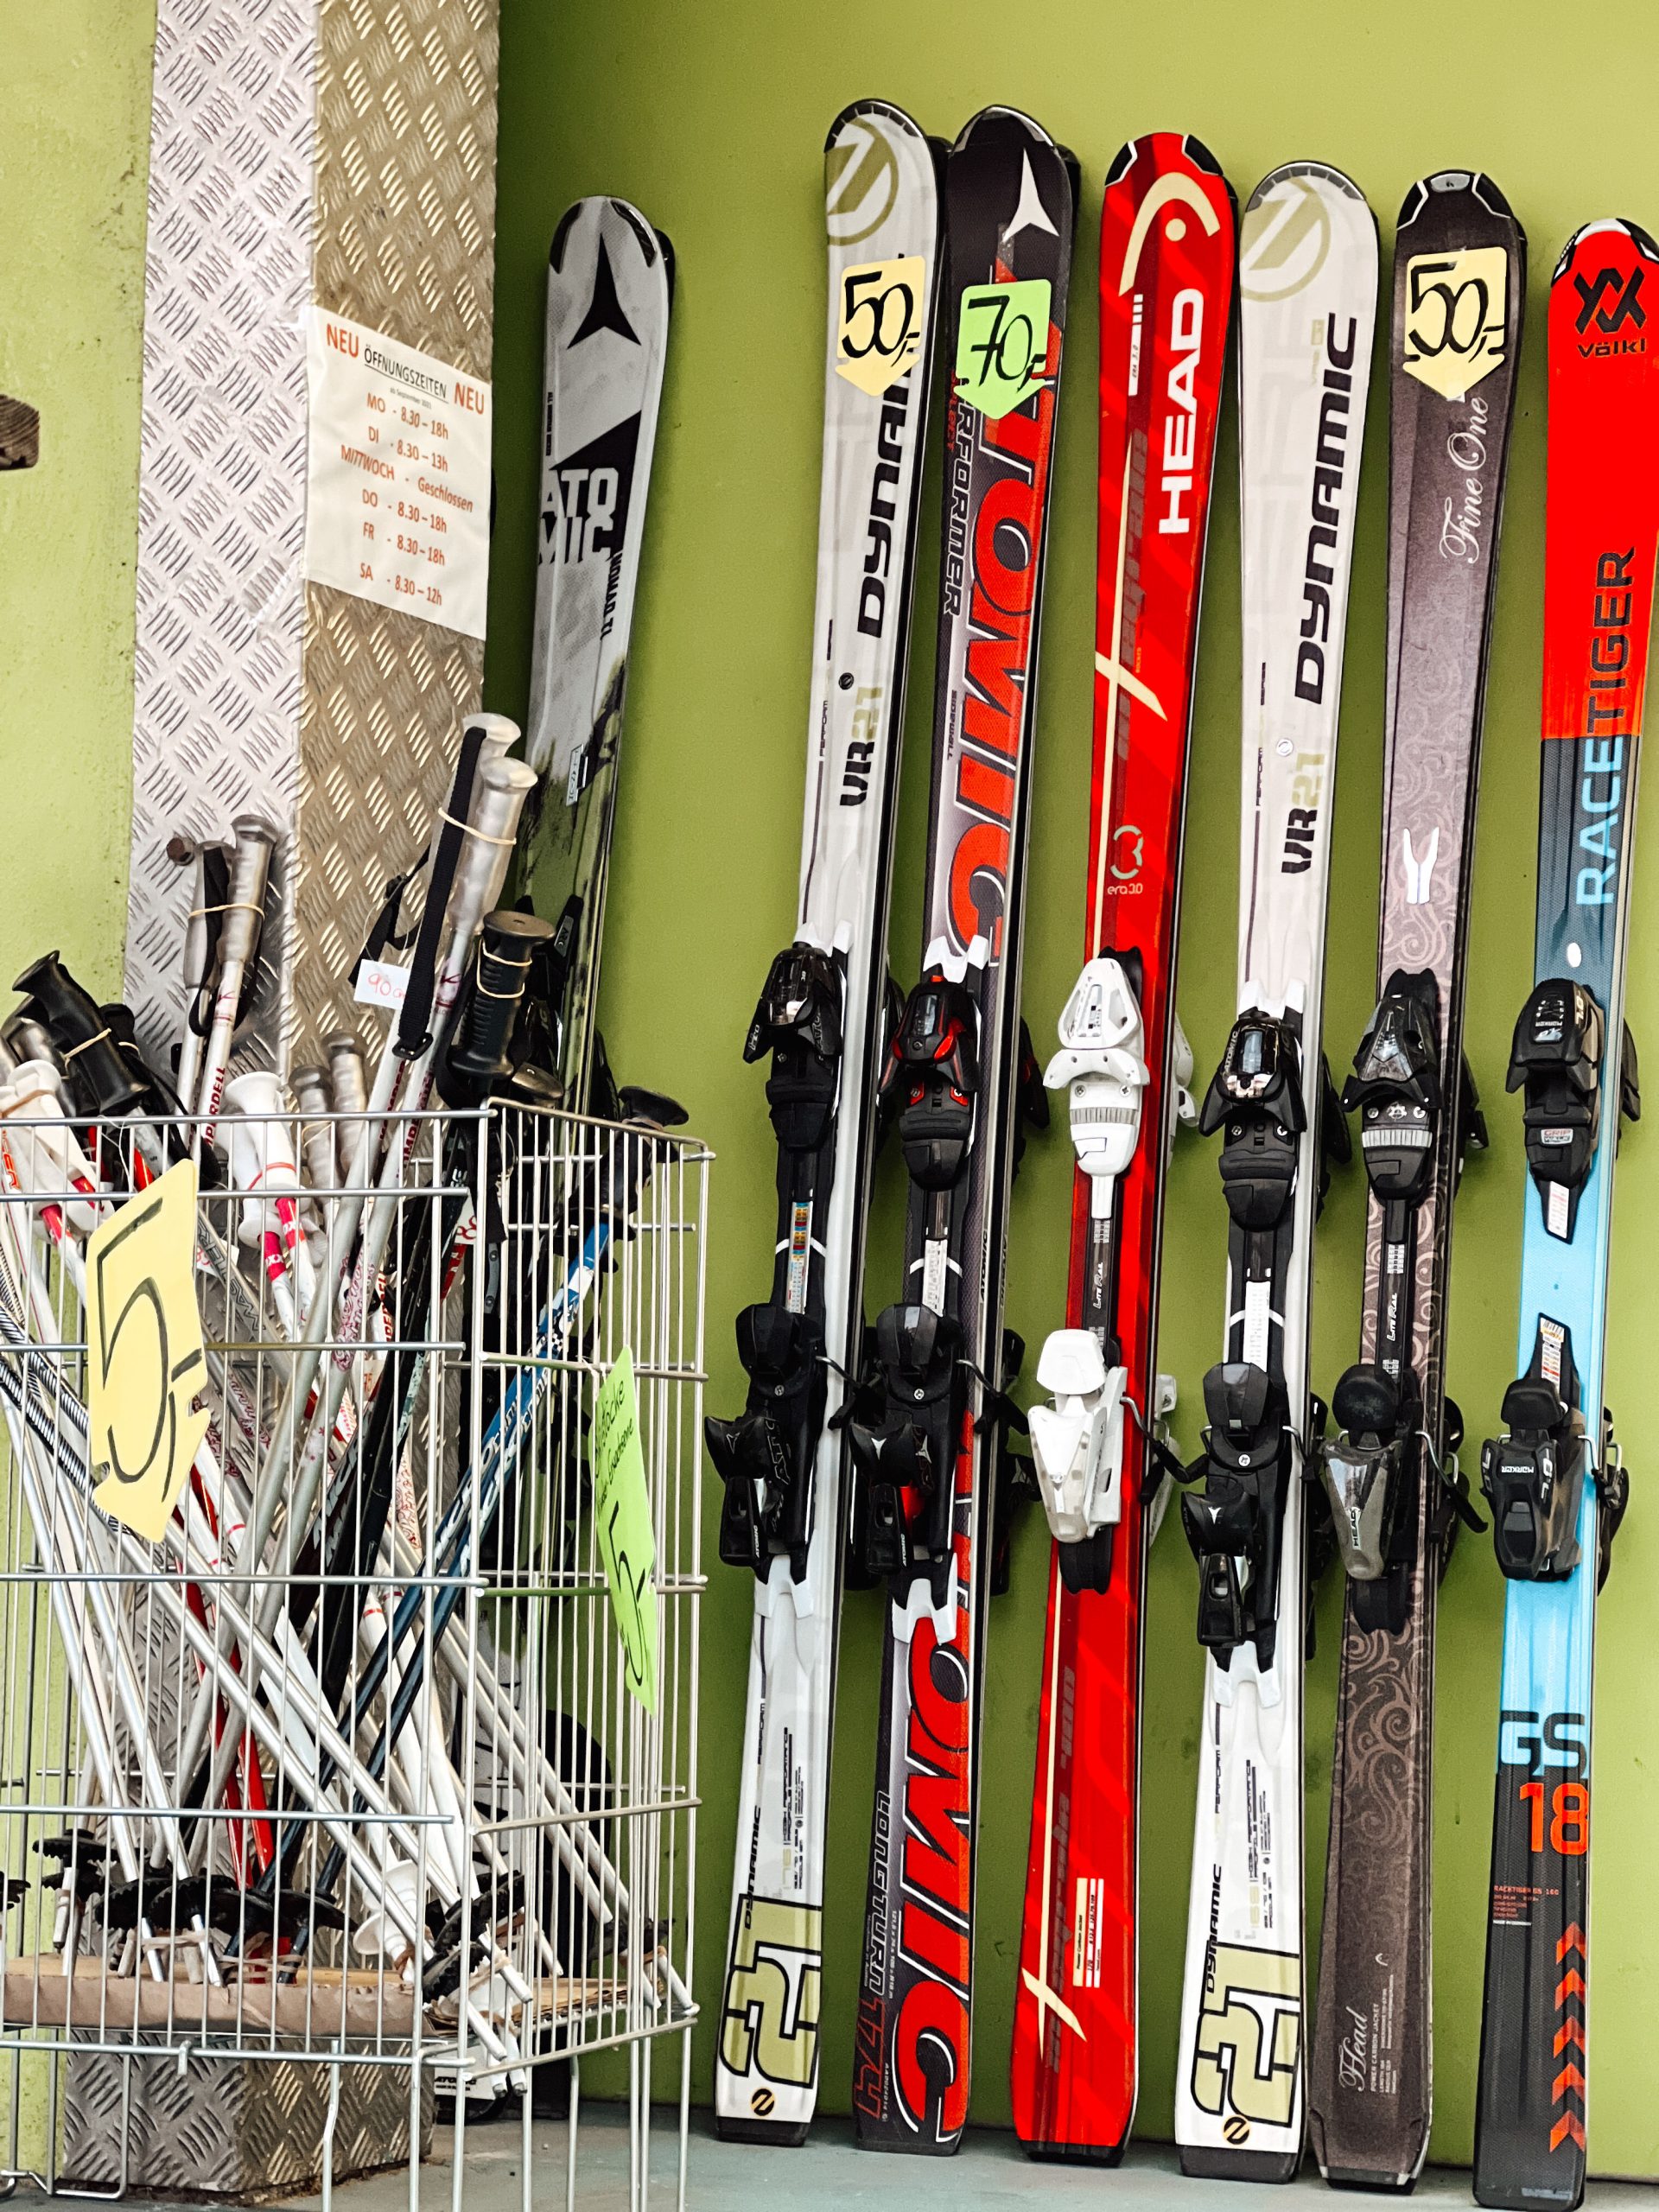 mehrere Paare Skier in einer Reihe an einer Wand, davor ein Korb mit verschiedenen Skistöcken